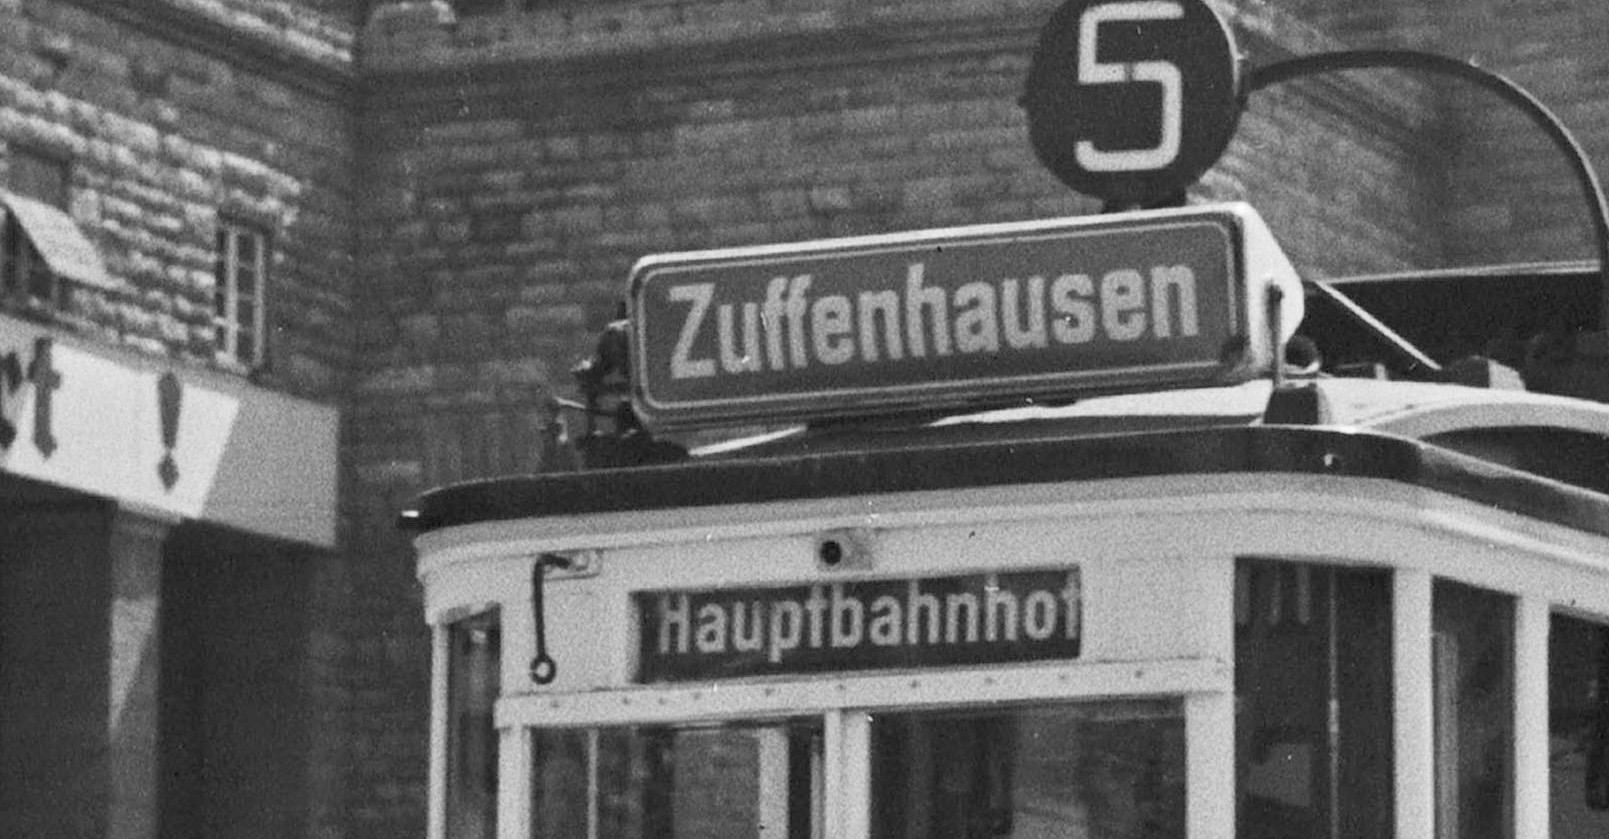 Tramlinie Nr. 5 Zuffenhausen Hauptstation, Stuttgart, Deutschland 1935, später gedruckt (Moderne), Photograph, von Karl Heinrich Lämmel